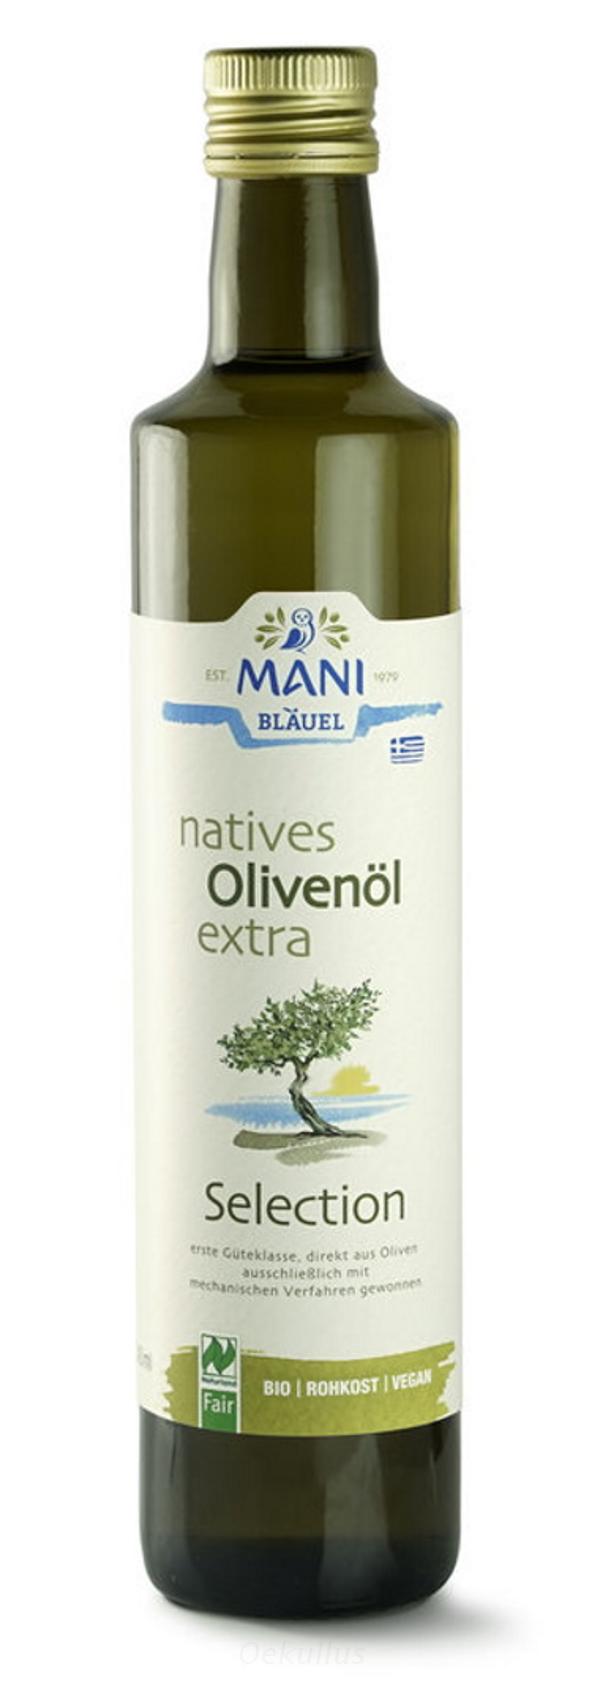 Produktfoto zu Griechisches Olivenöl 0,5 Liter